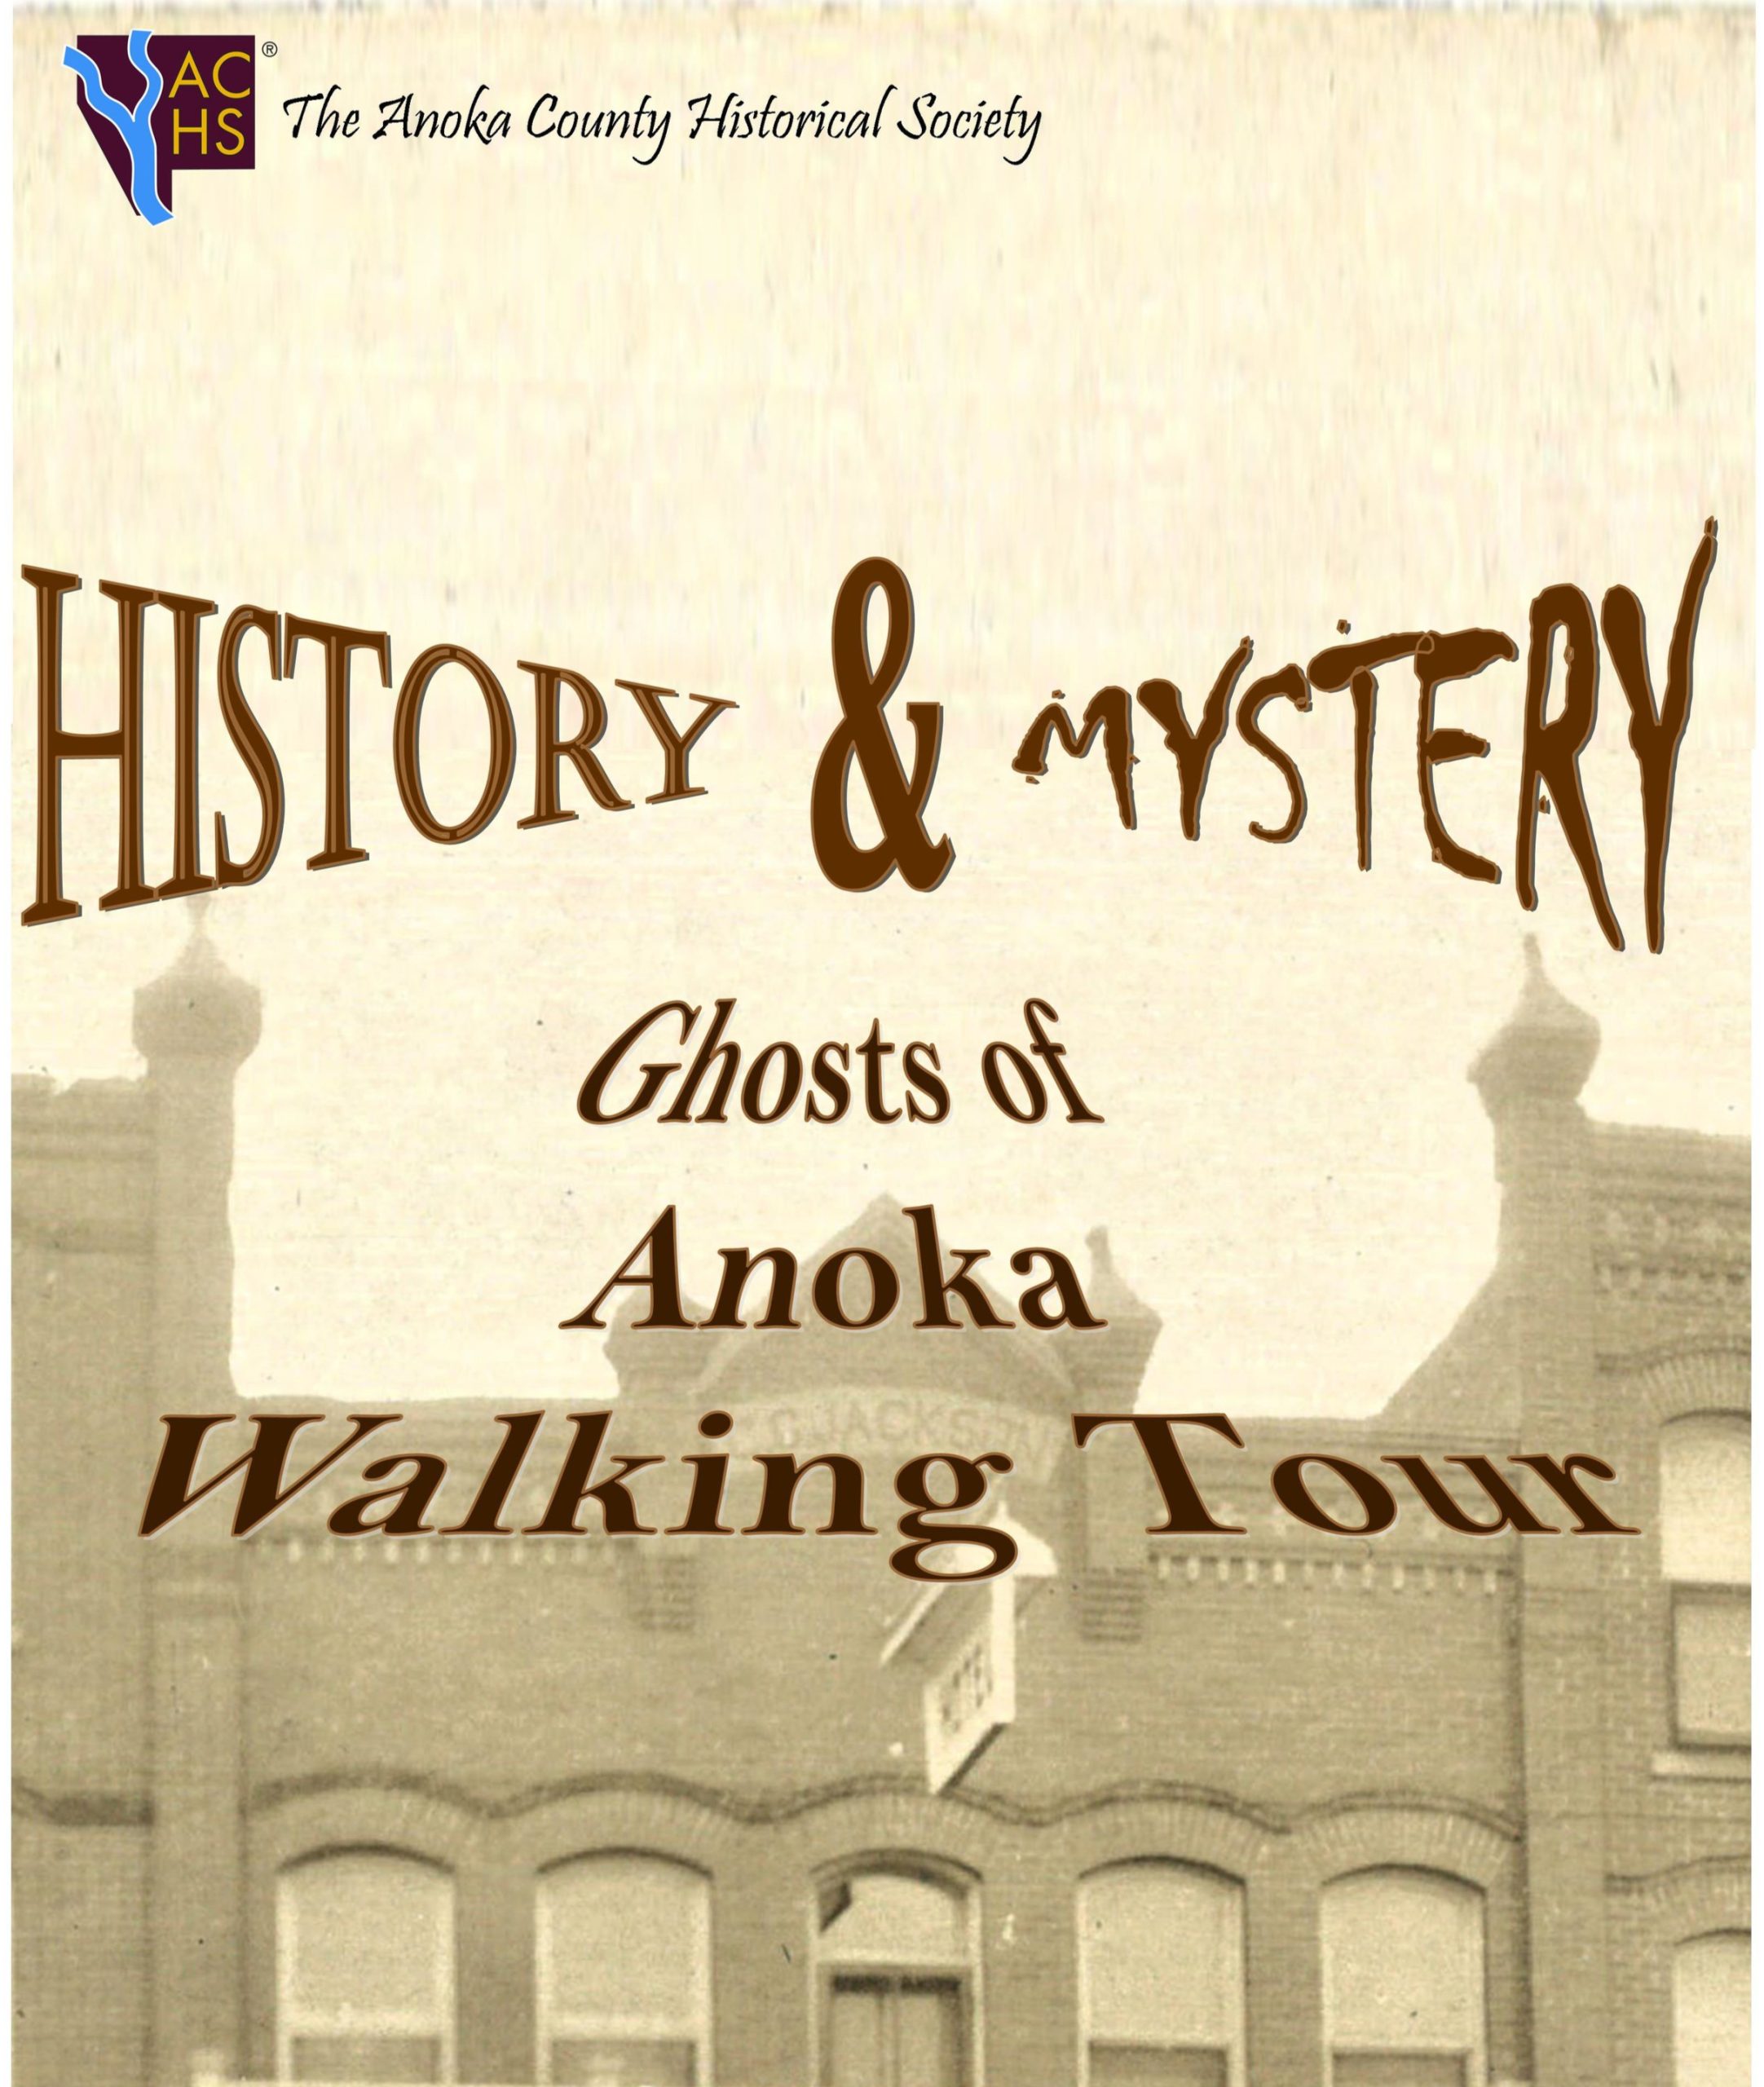 Ghosts of Anoka Walking Tour